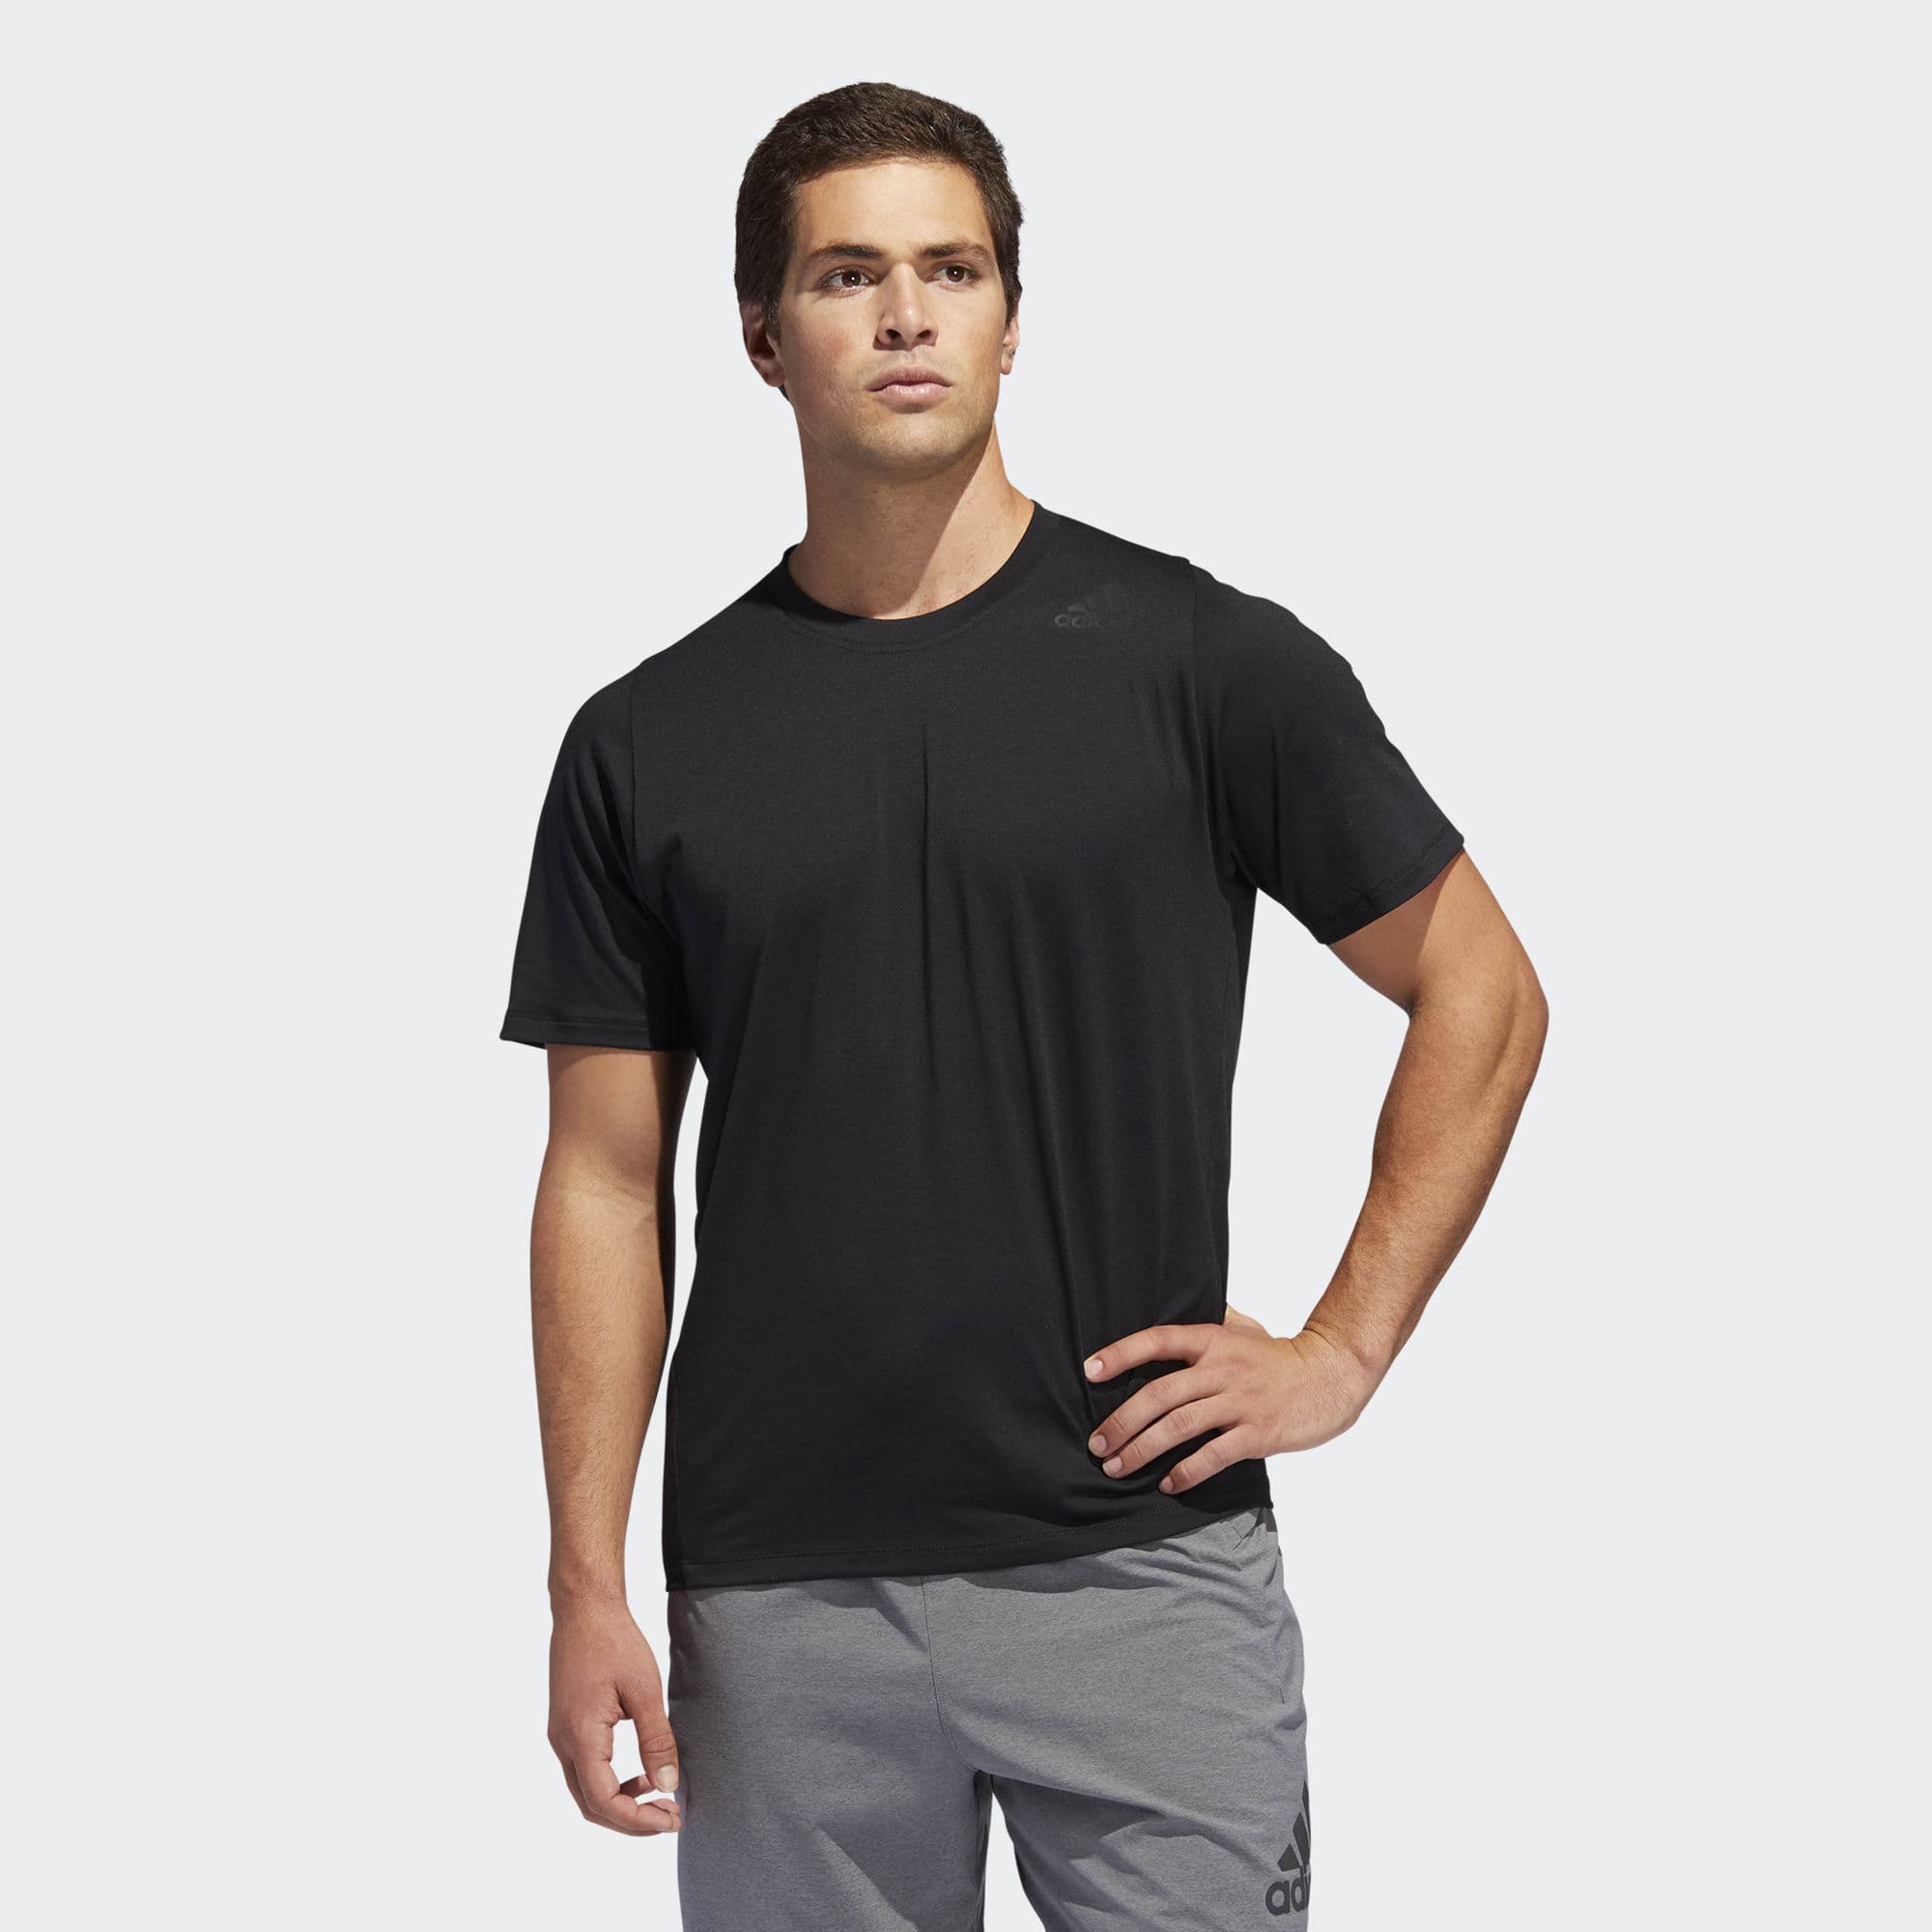 Adidas Marškinėliai Prime Lite T-Shirt DU1374